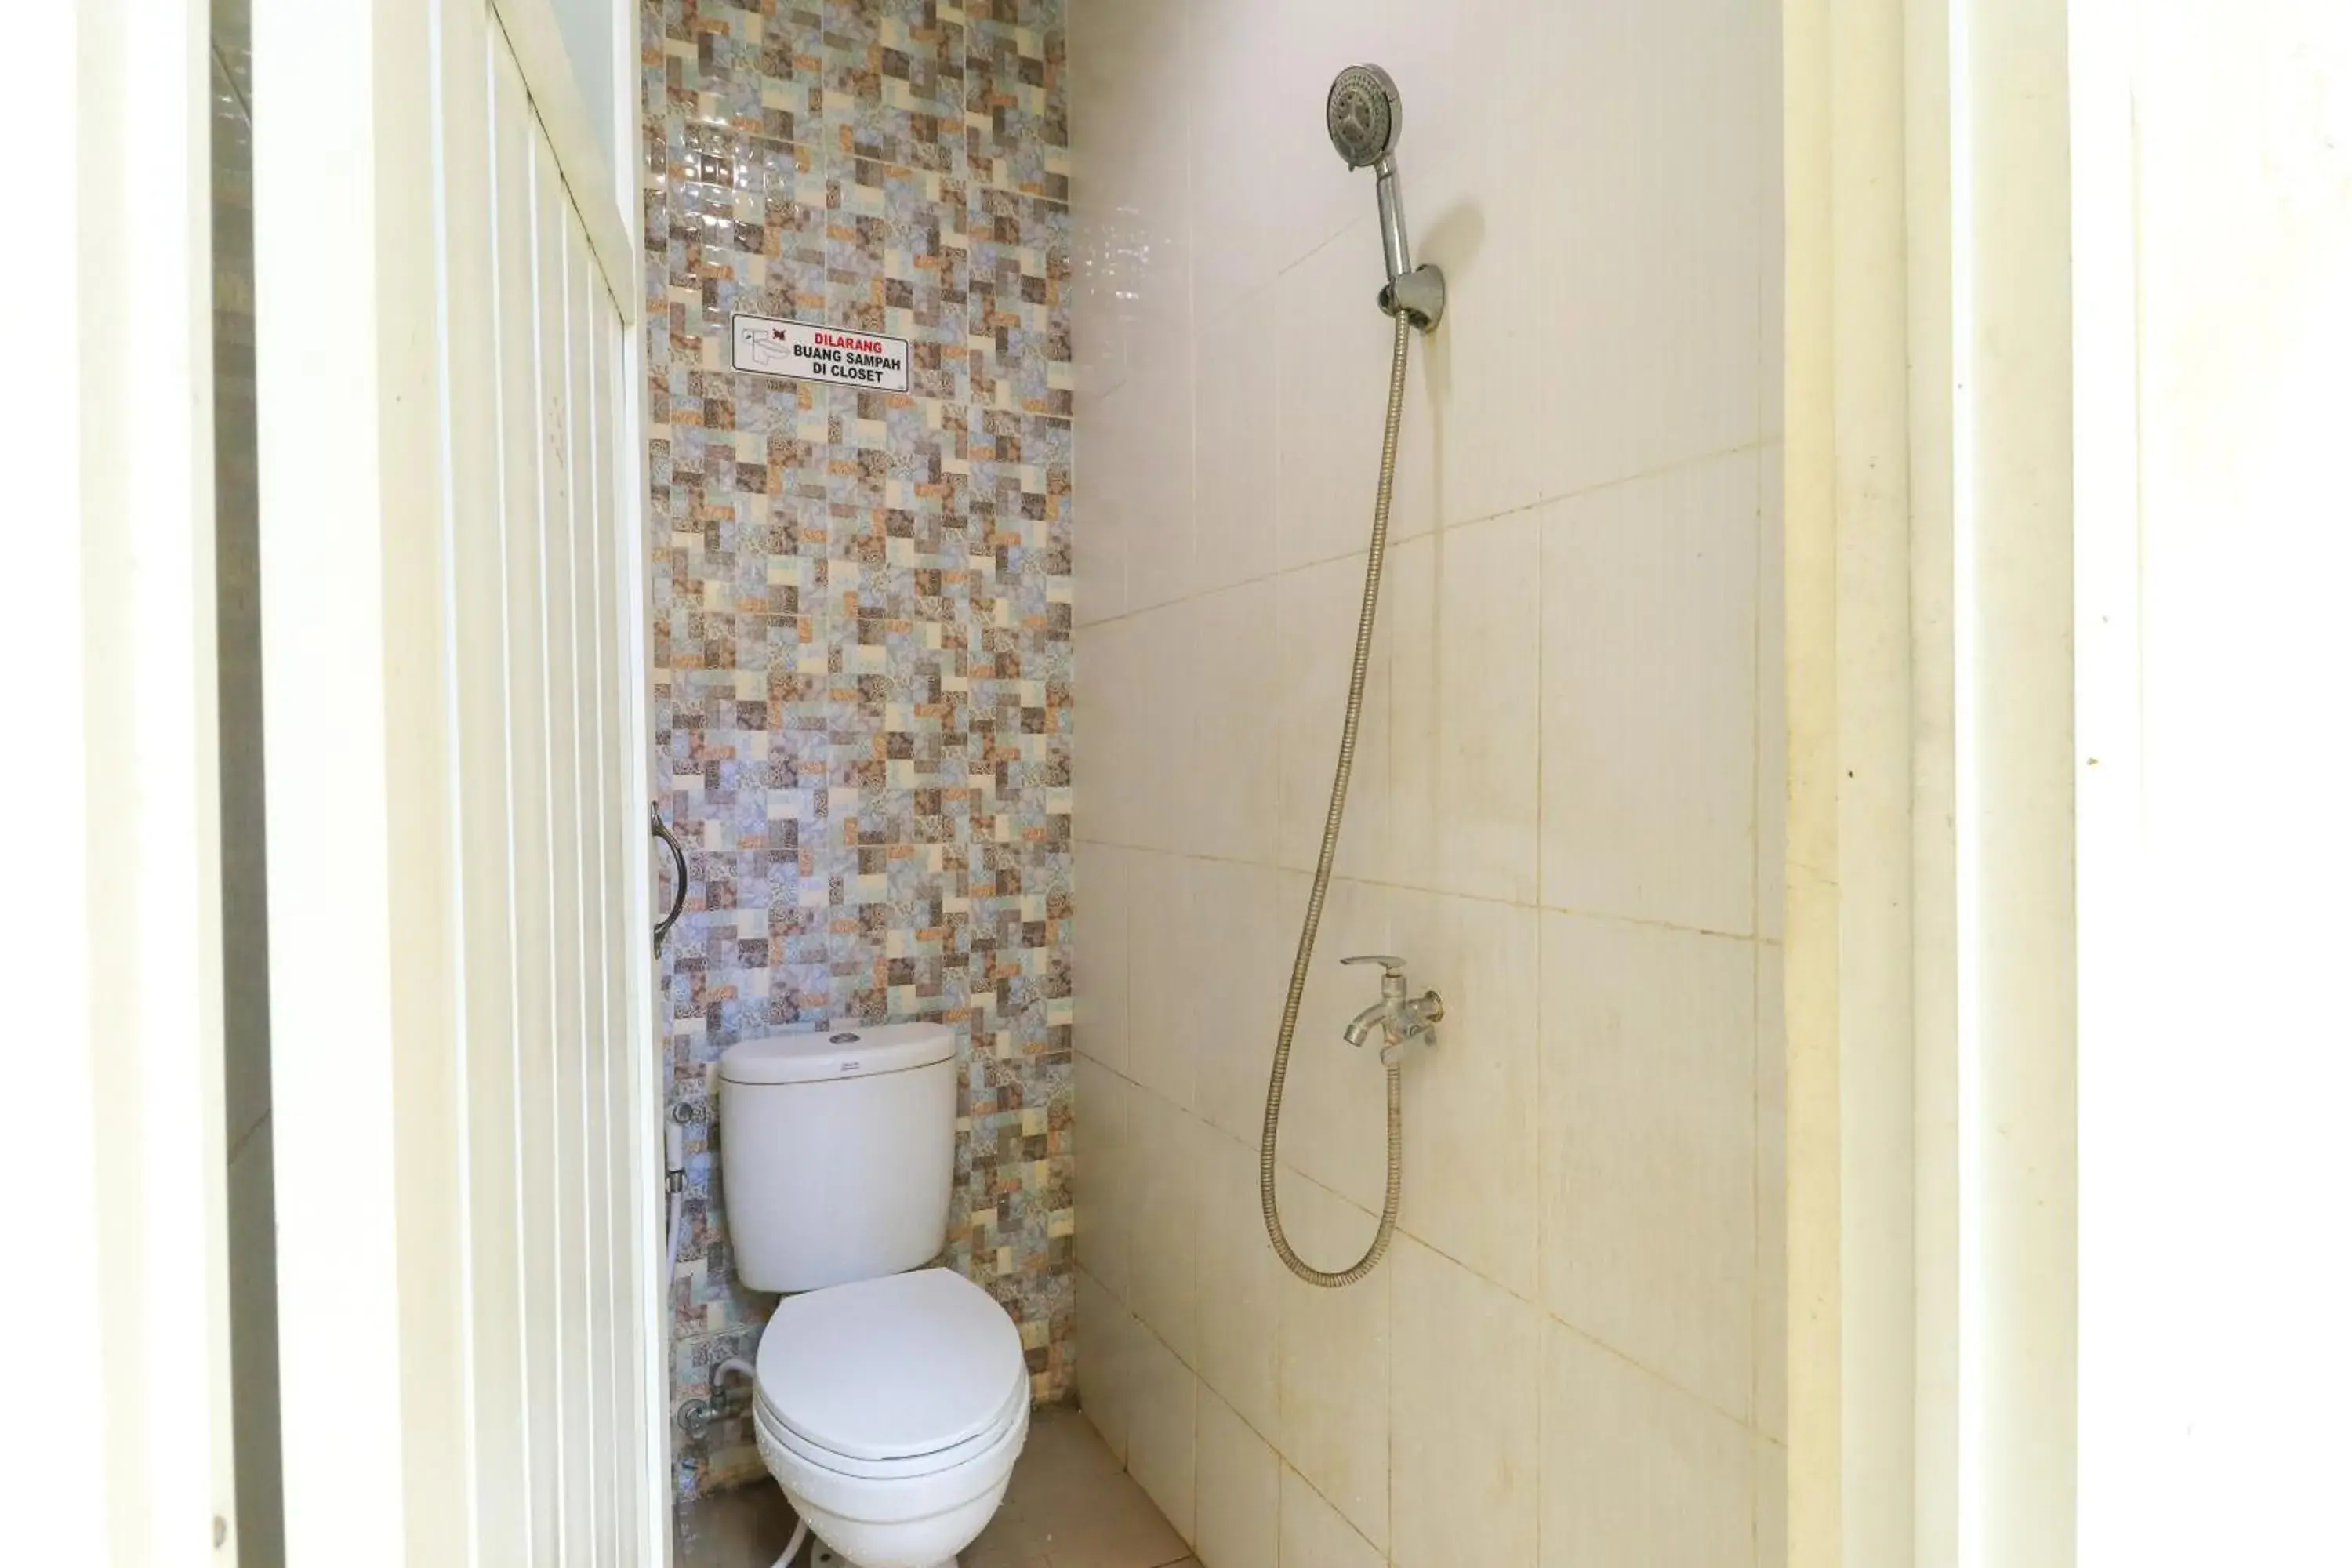 Bathroom in House of Dharmawan